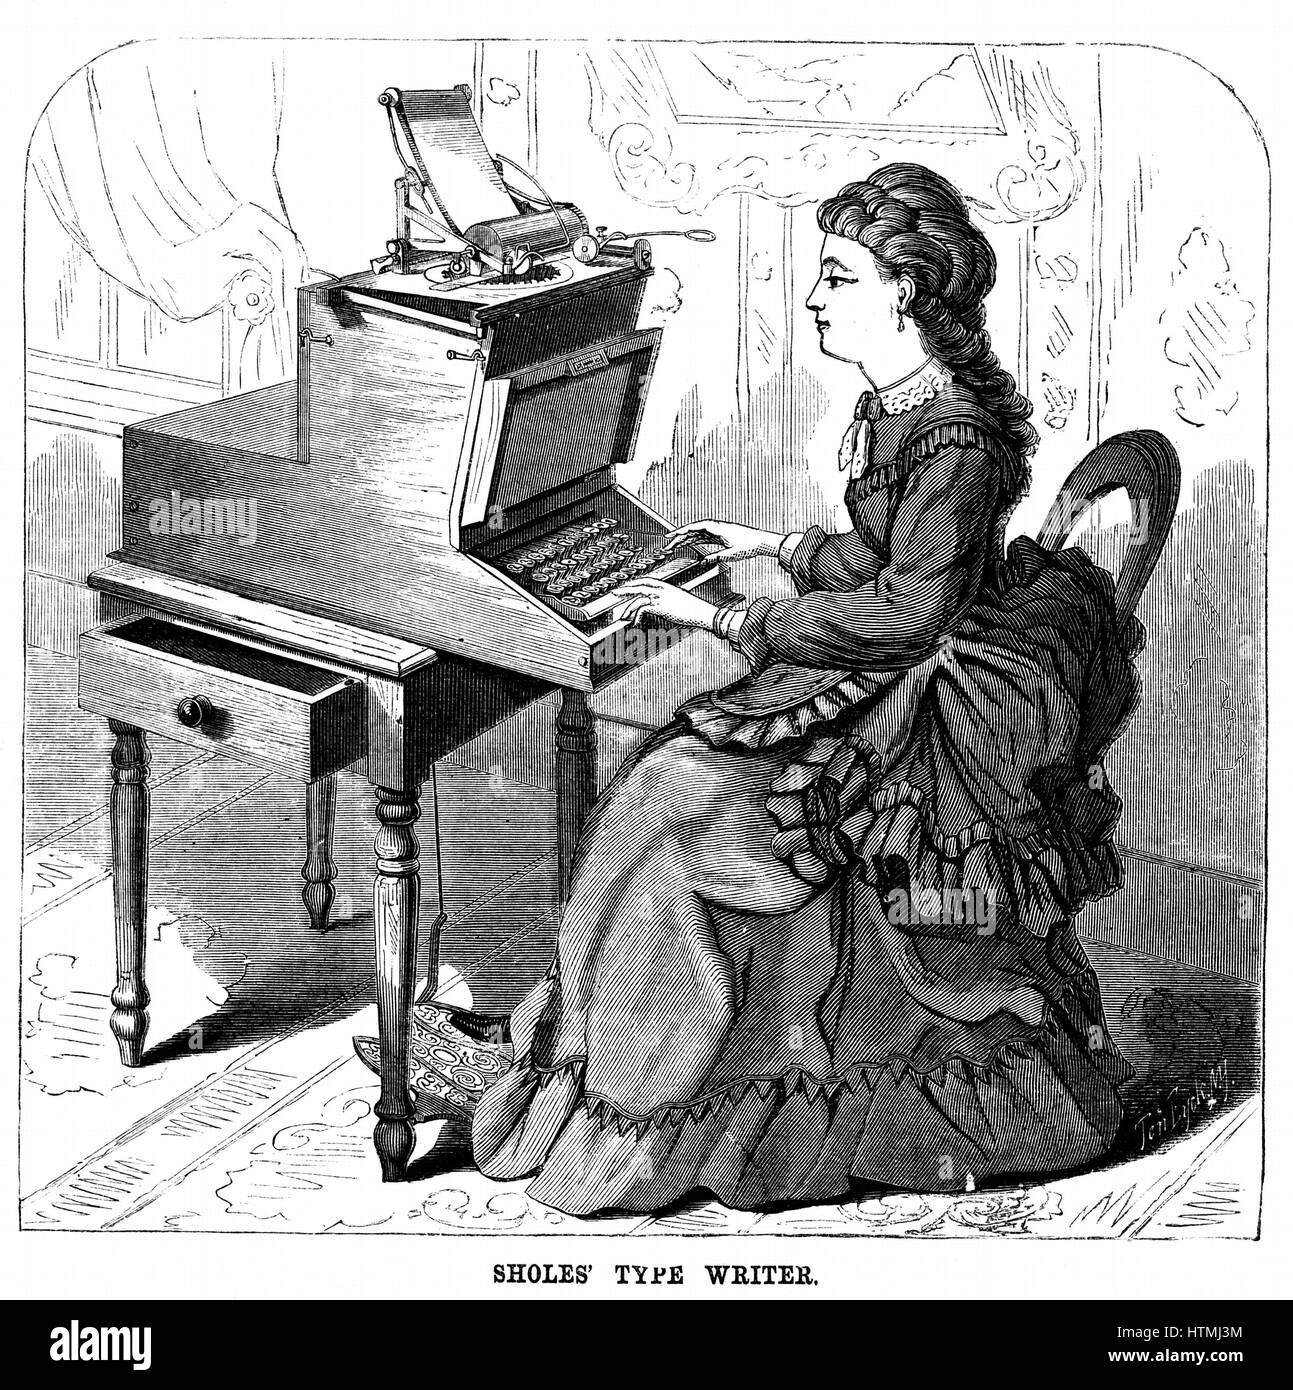 La máquina de escribir: un invento que nació por amor - El Periódico